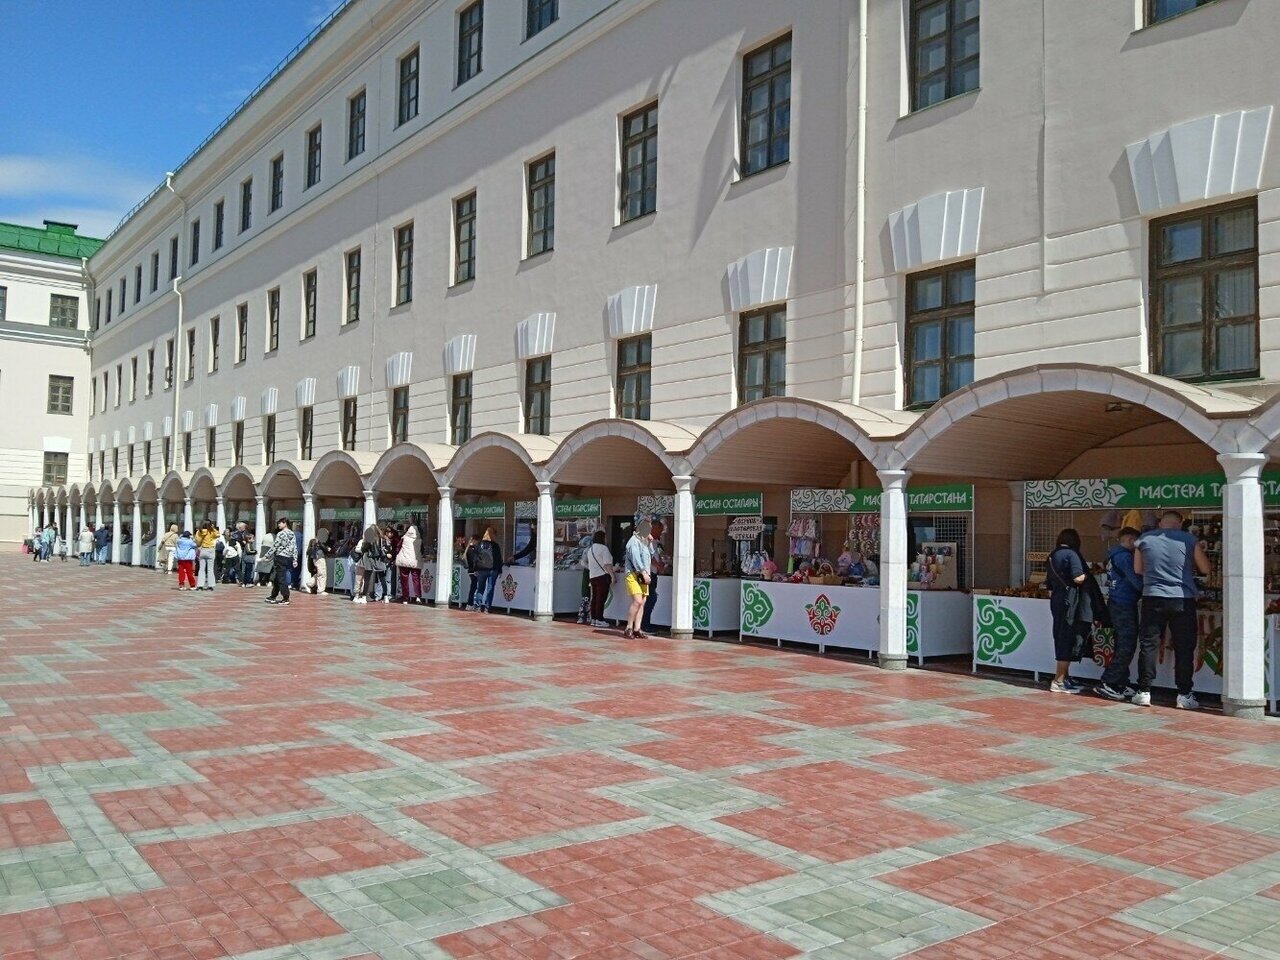 Торговые ряды «Мастера Татарстана» расположены напротив главной мечети Казани — Кул-Шариф.